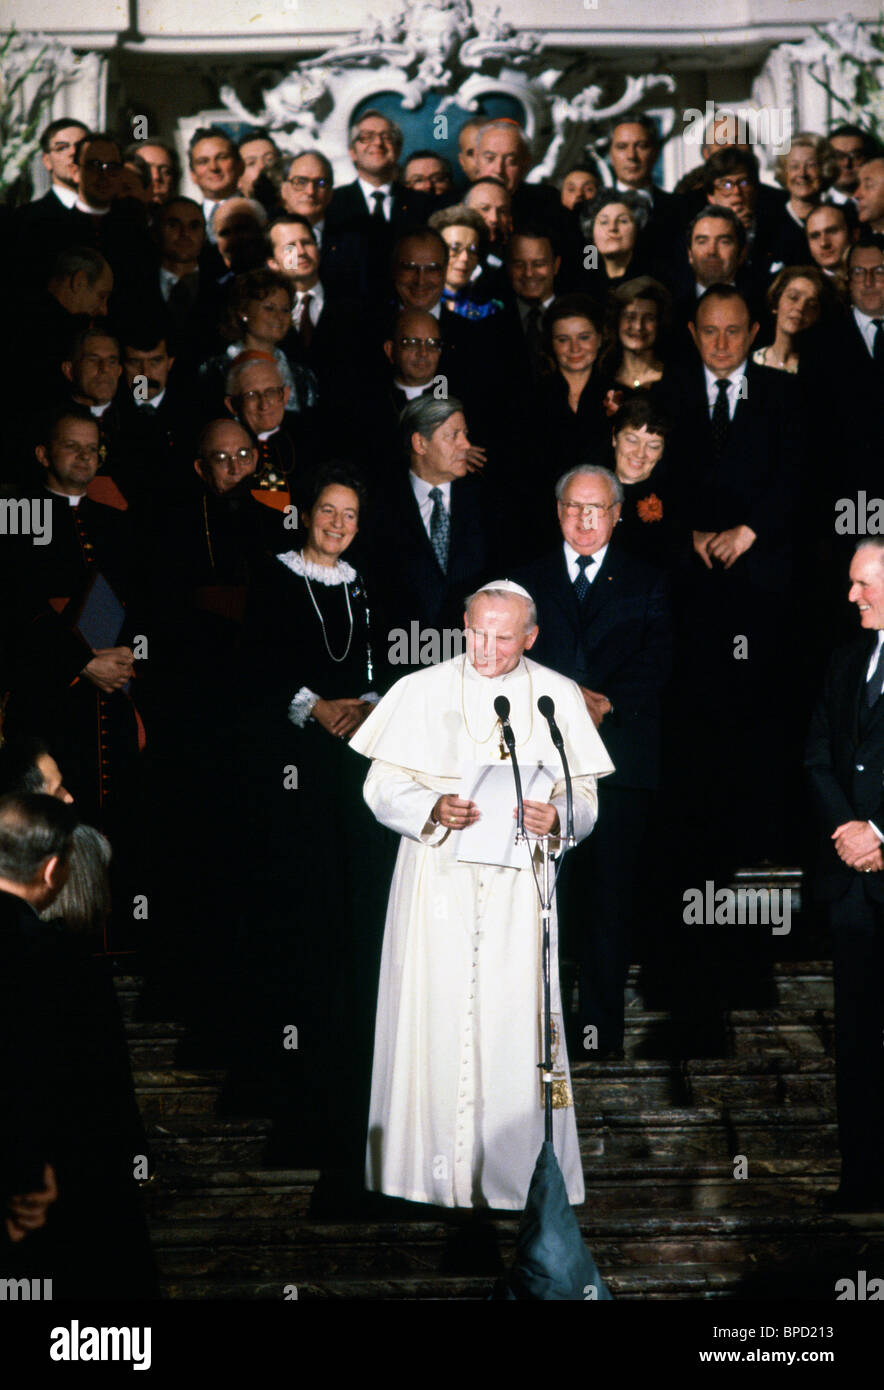 Le pape Jean-Paul II, avec le chancelier Helmut Schmidt derrière, prononce un discours lors de sa visite en Allemagne Banque D'Images